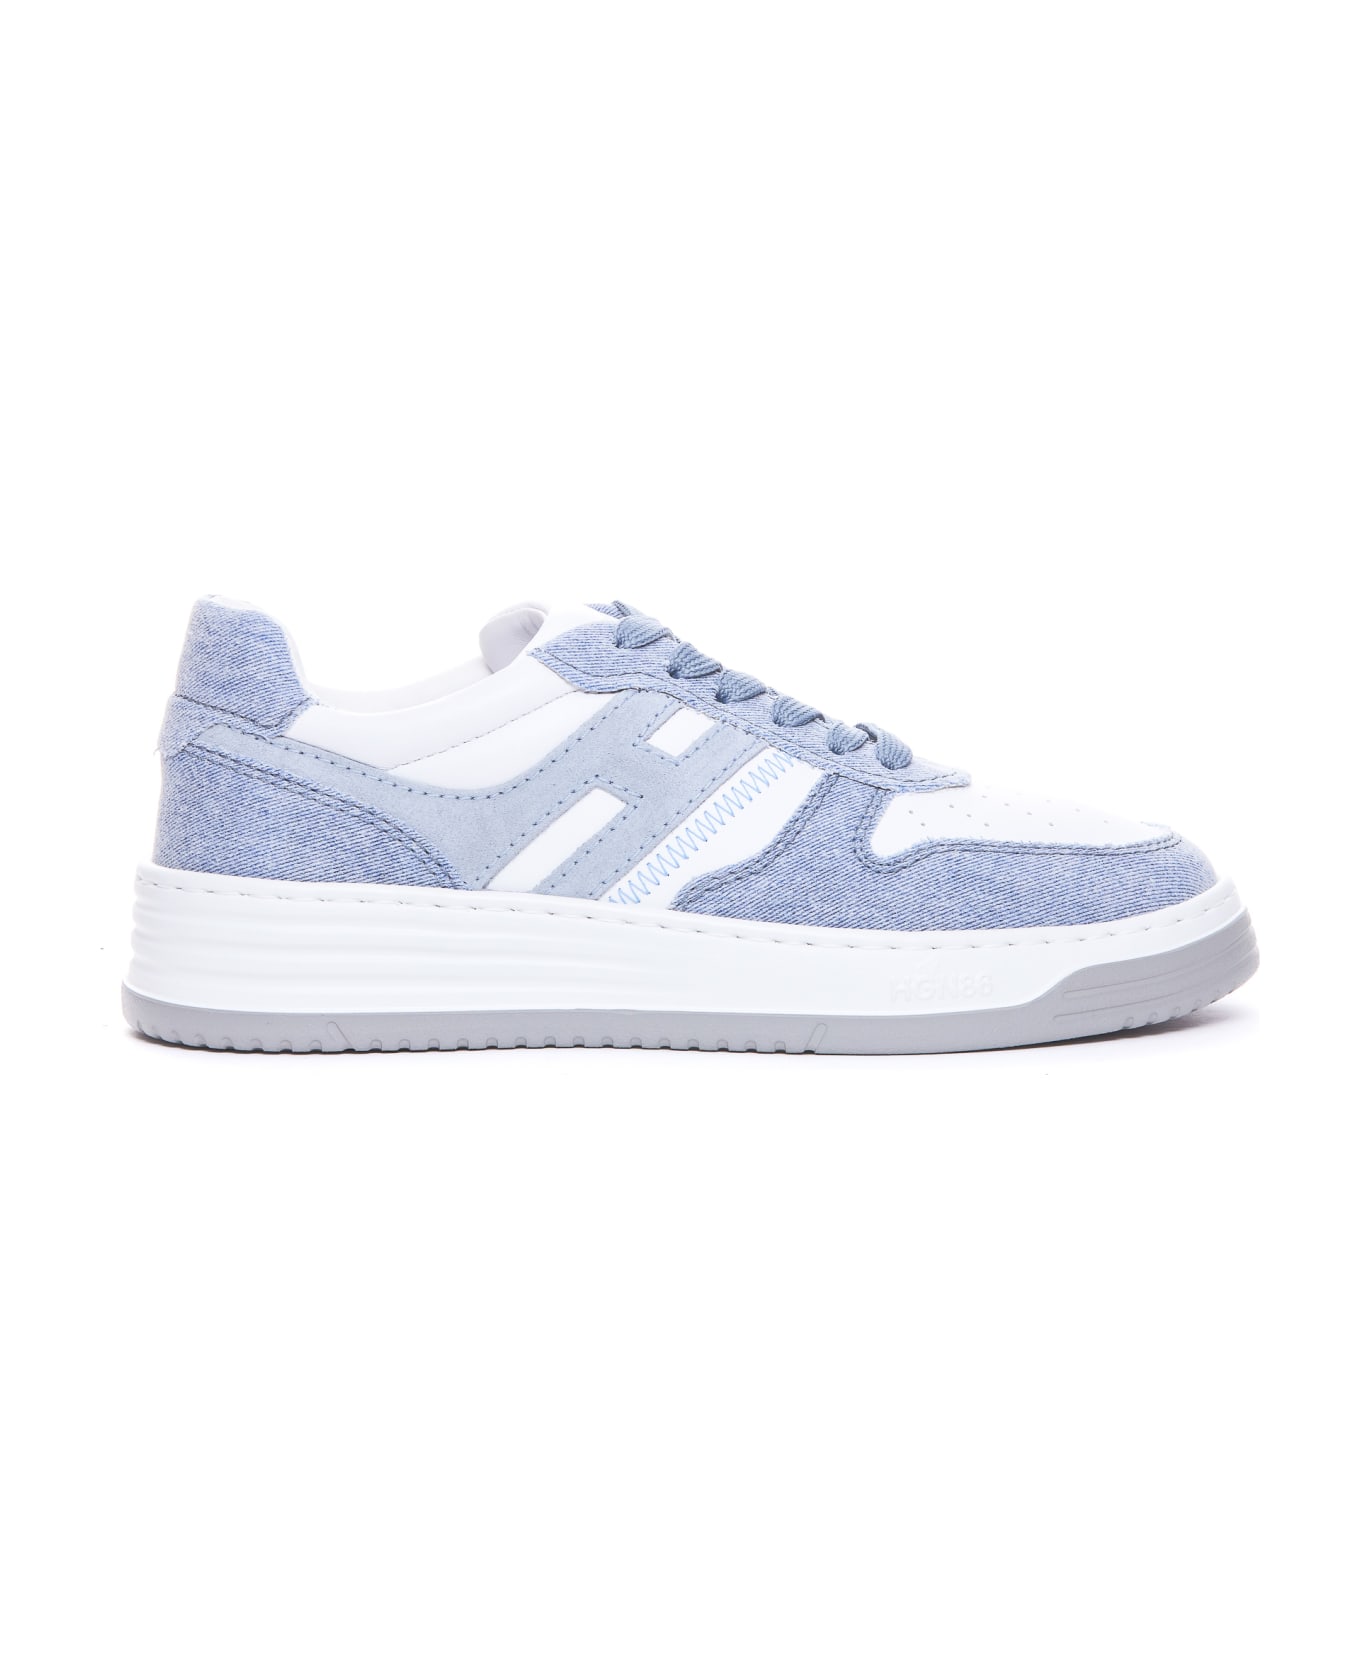 Hogan H630 Sneakers - WHITE/BLUE スニーカー